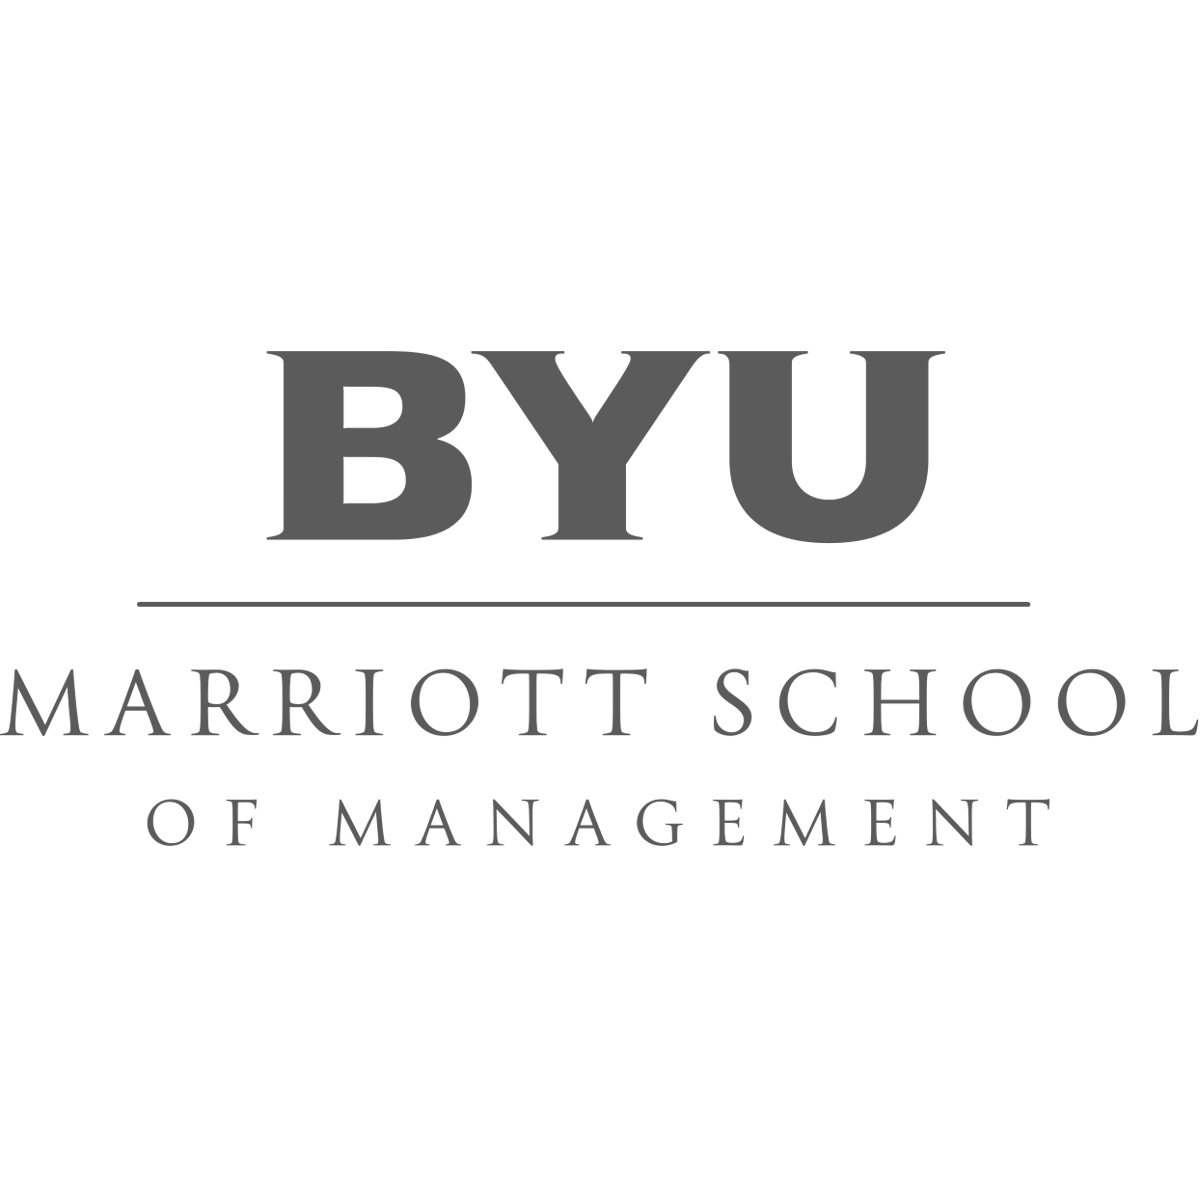 byu-marriott-school.png